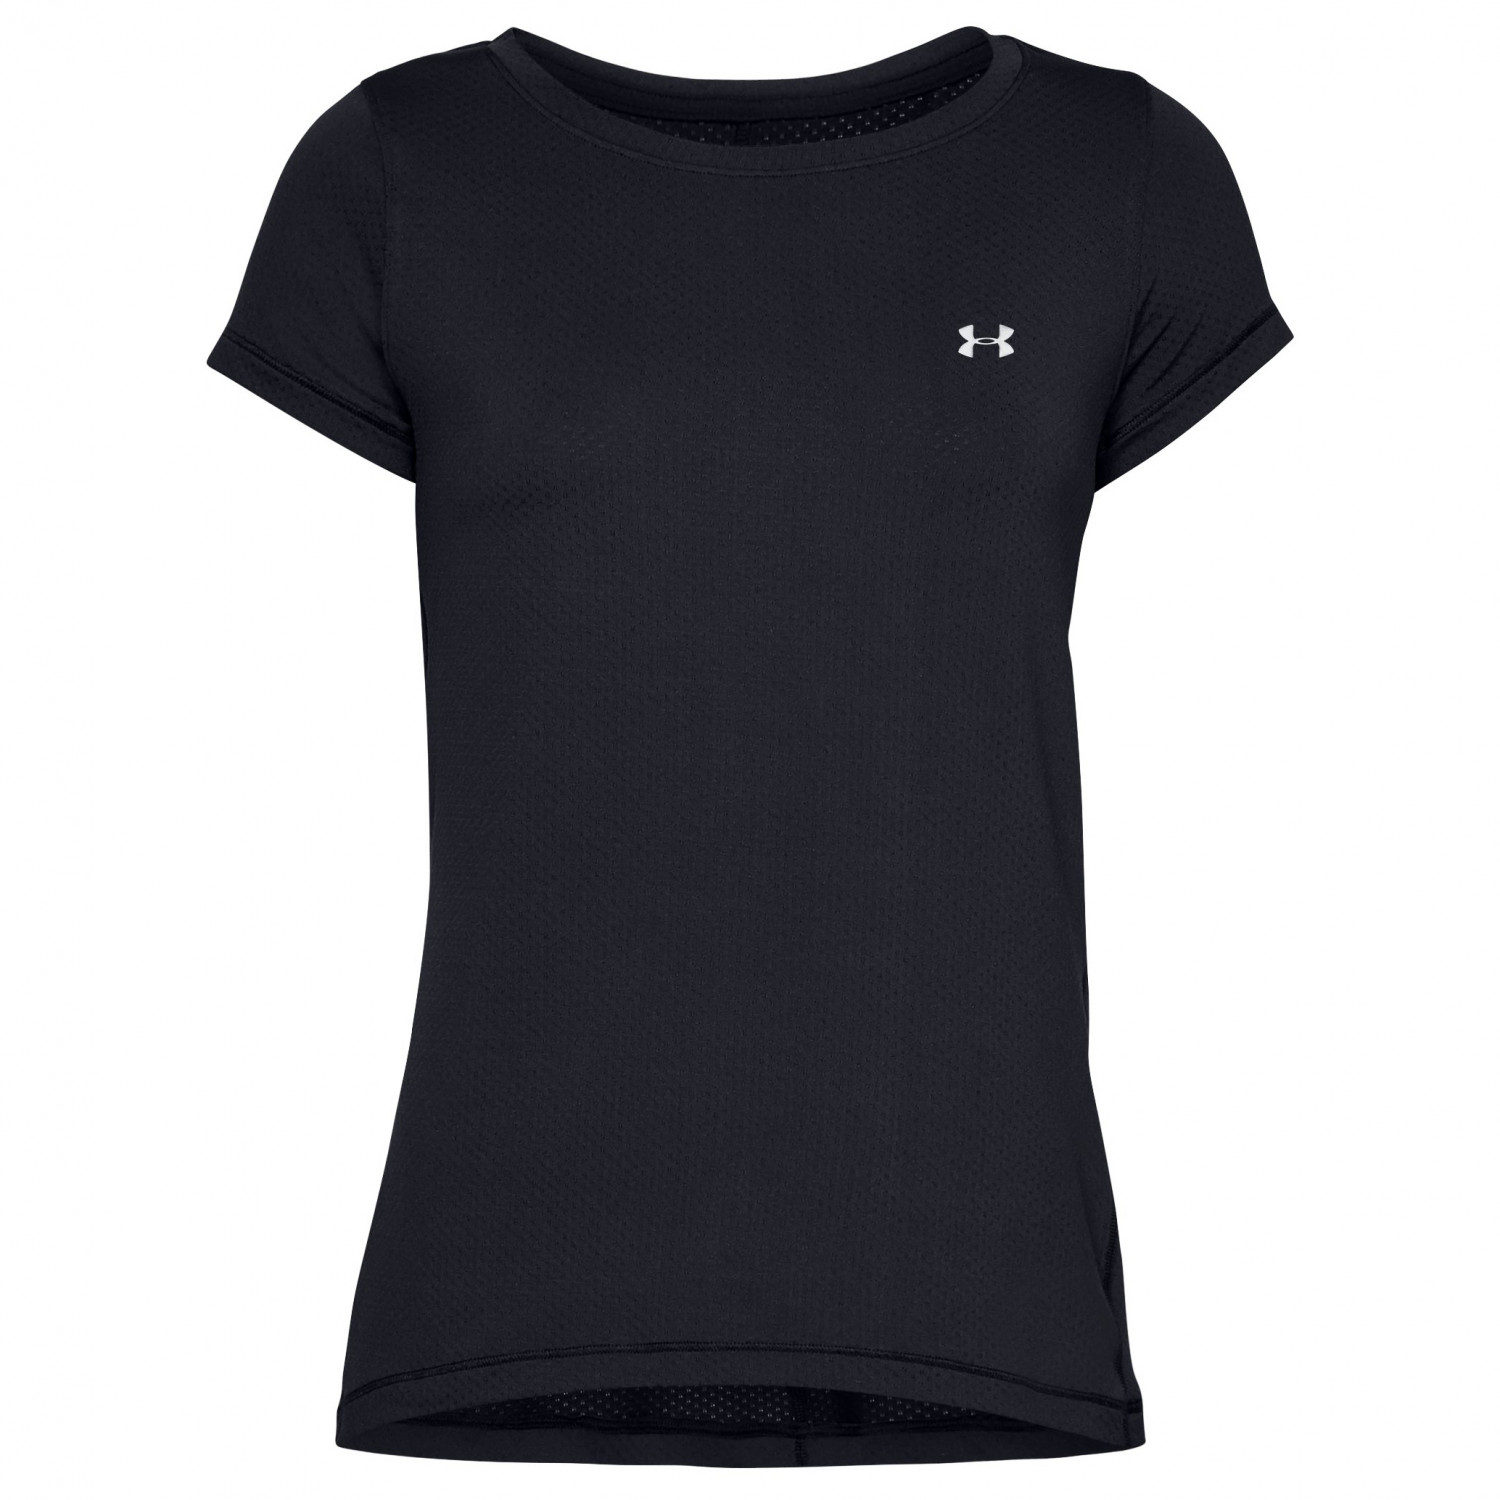 Функциональная рубашка Under Armour Women's UA Heatgear Armour S/S, цвет Black/Metallic Silver футболка с короткими рукавами ua tech under armour цвет neo turquoise black